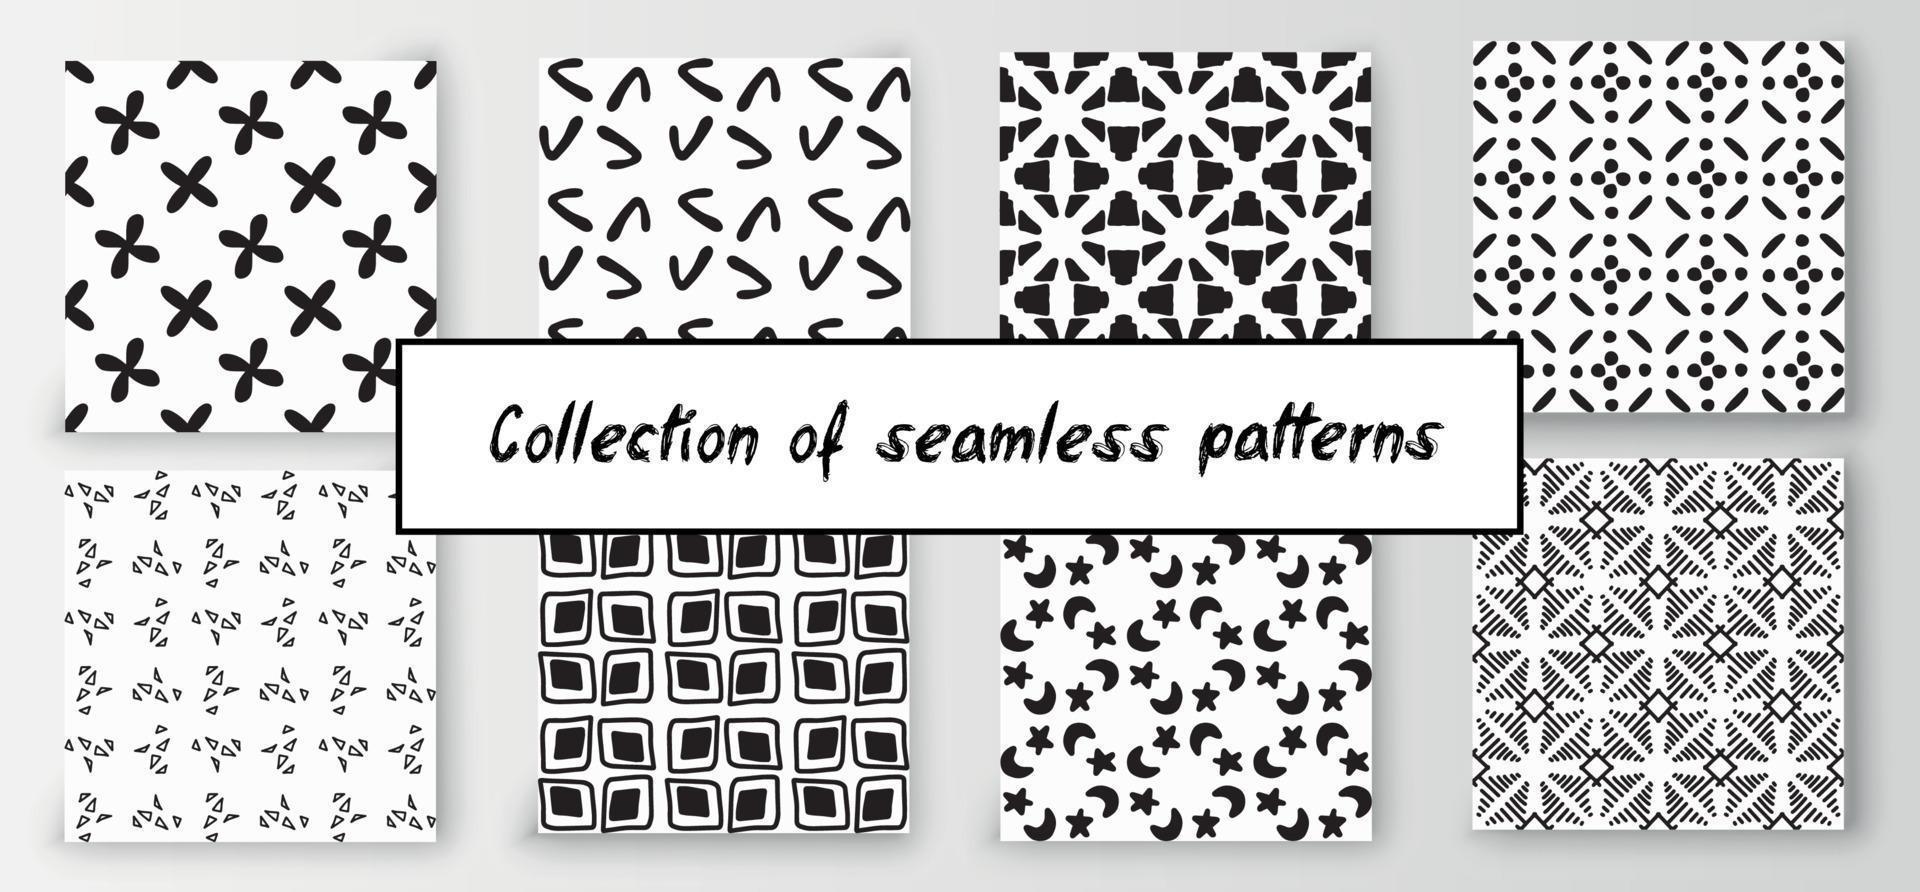 conjunto de patrones dibujados a mano geométricos abstractos sin fisuras. fondo creativo moderno vector